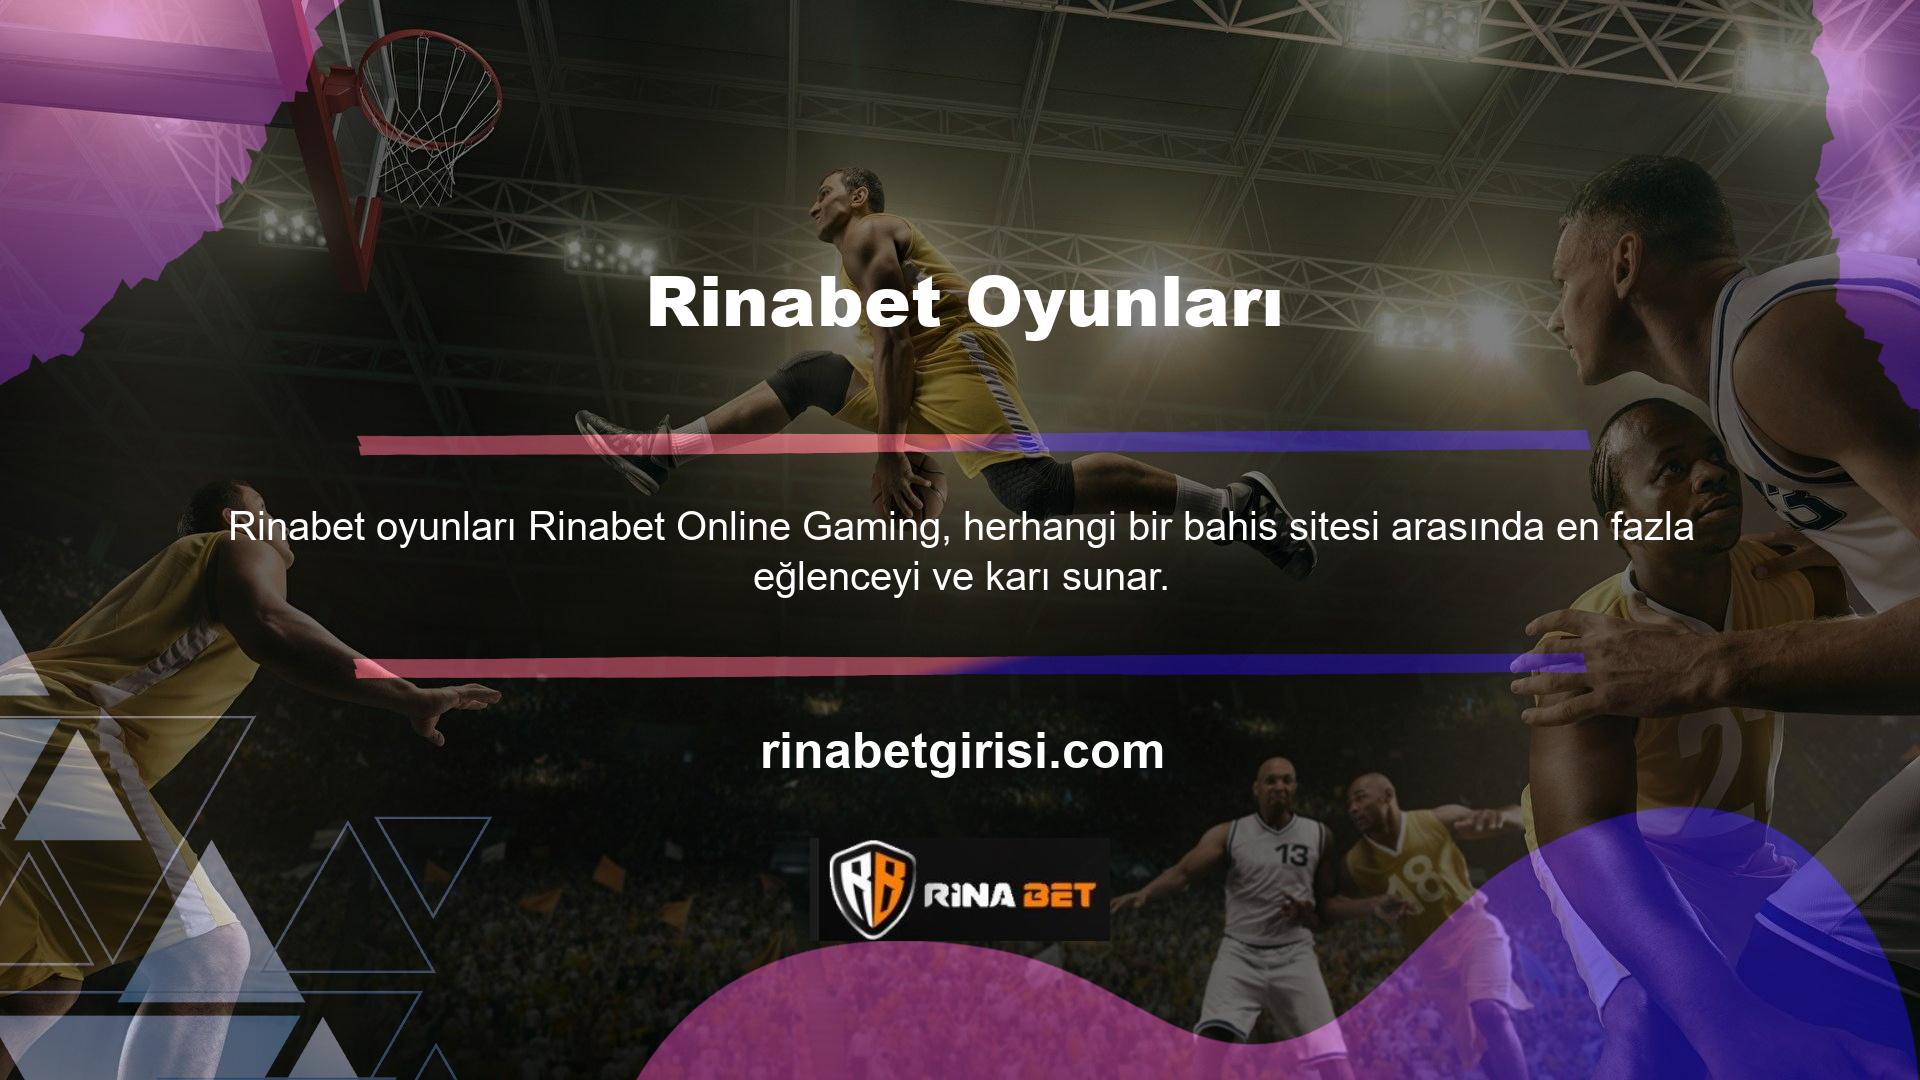 Çevrimiçi bahis sitesi Rinabet bir bahisçi olarak, canlı oyunların rekabetçi, eğlenceli ve karlı olmasını bekleyebilirsiniz